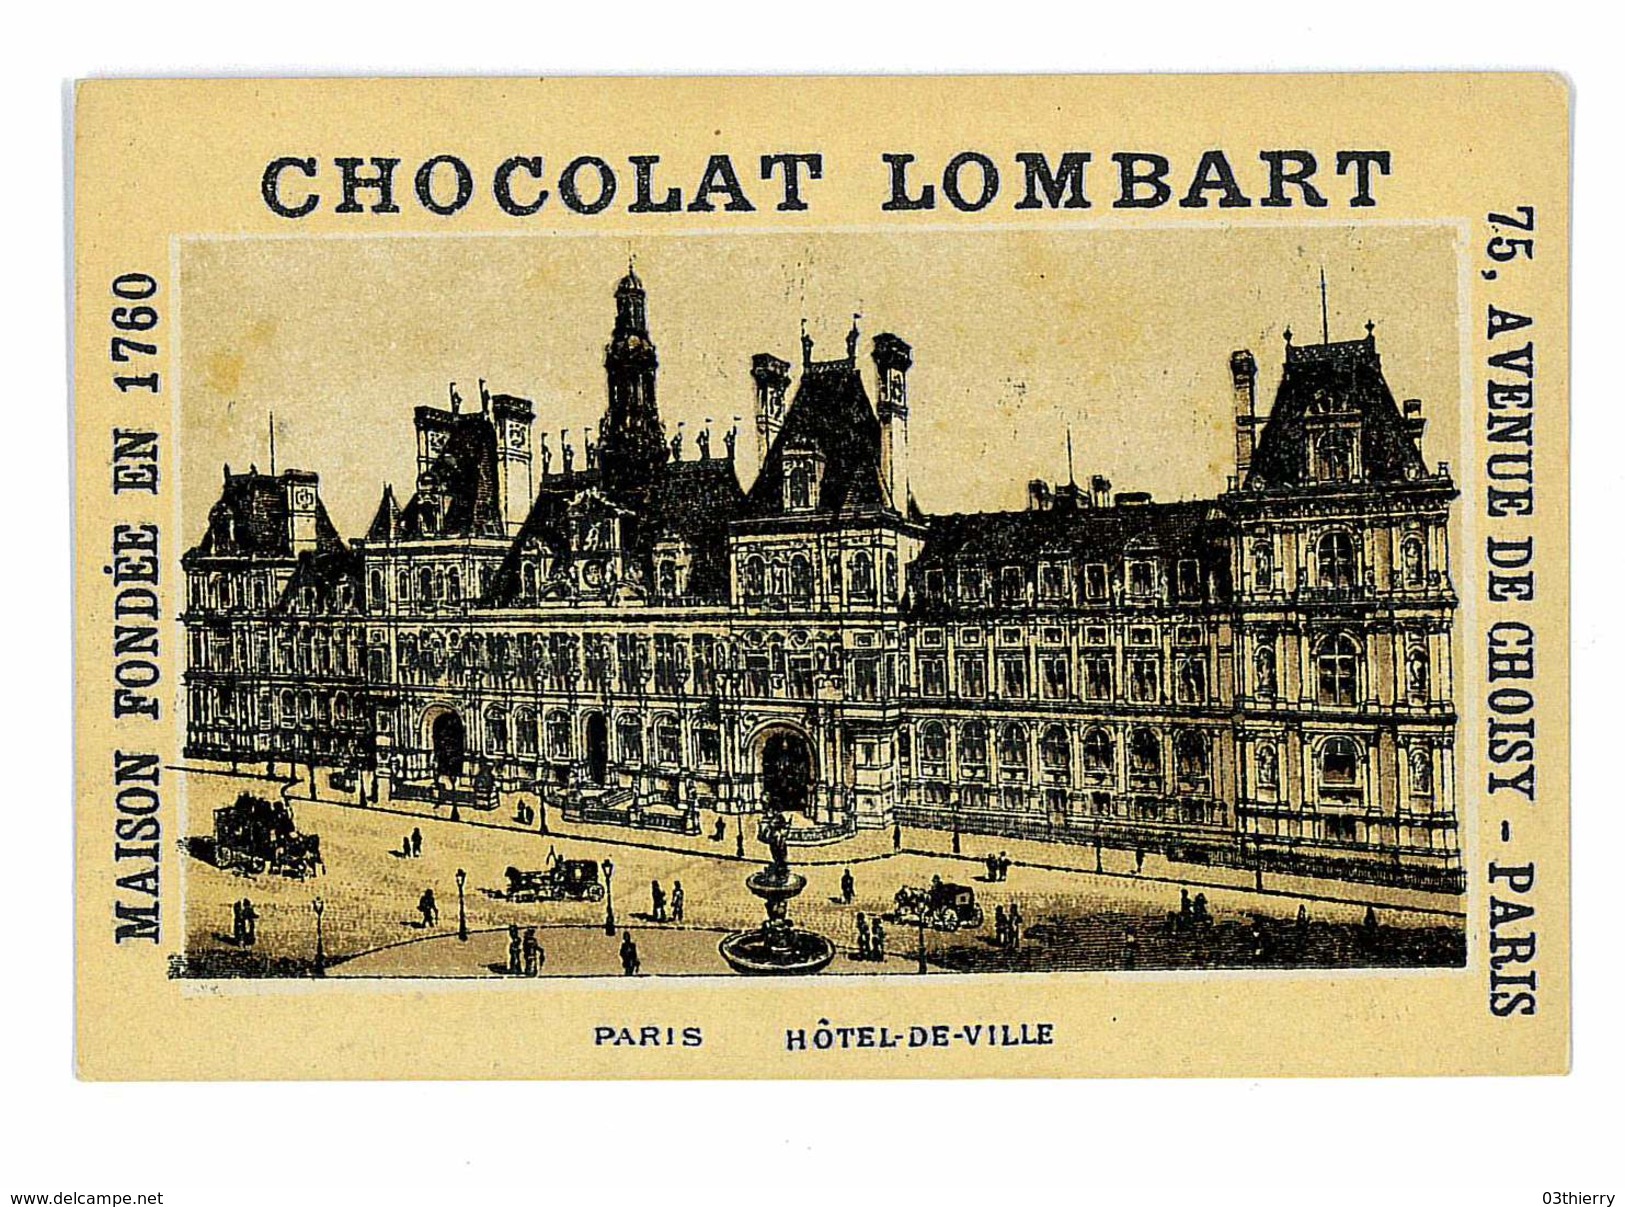 CHROMO IMAGE CHOCOLAT LOMBART PARIS ILLUSTRATION PARIS HOTEL DE VILLE - Lombart